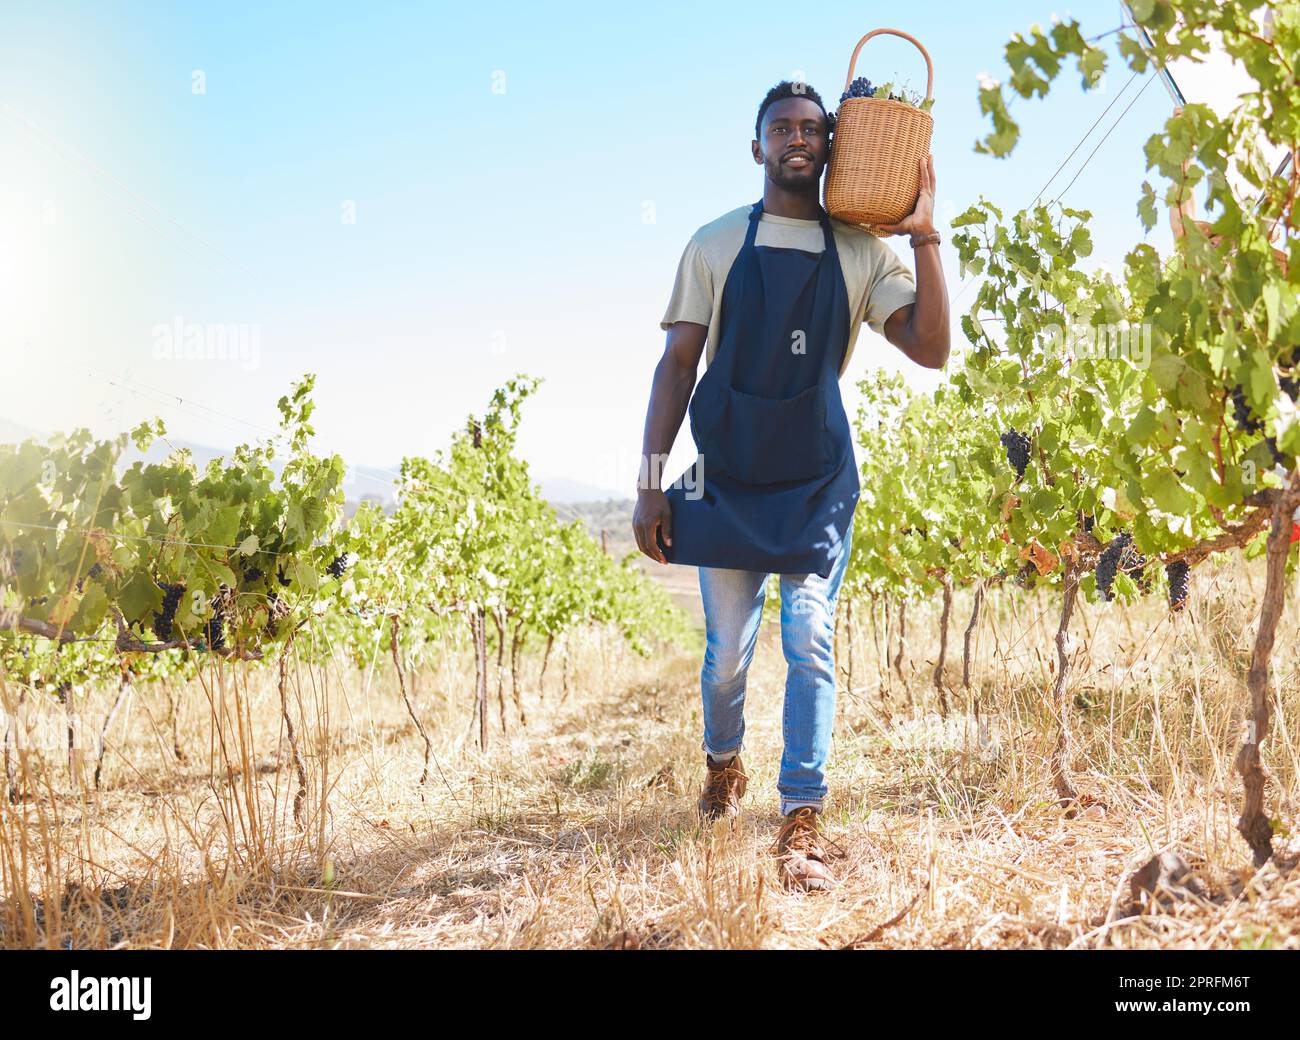 Bauernhof, Arbeiter und Wein eines Mannes, der im Sommer auf einem Weinberg im Freien Trauben bearbeitet oder sammelt. Landwirt im landwirtschaftlichen Wachstum, mit natürlichen gesunden Früchten für Einzelhandelsgeschäfte oder Geschäfte. Stockfoto